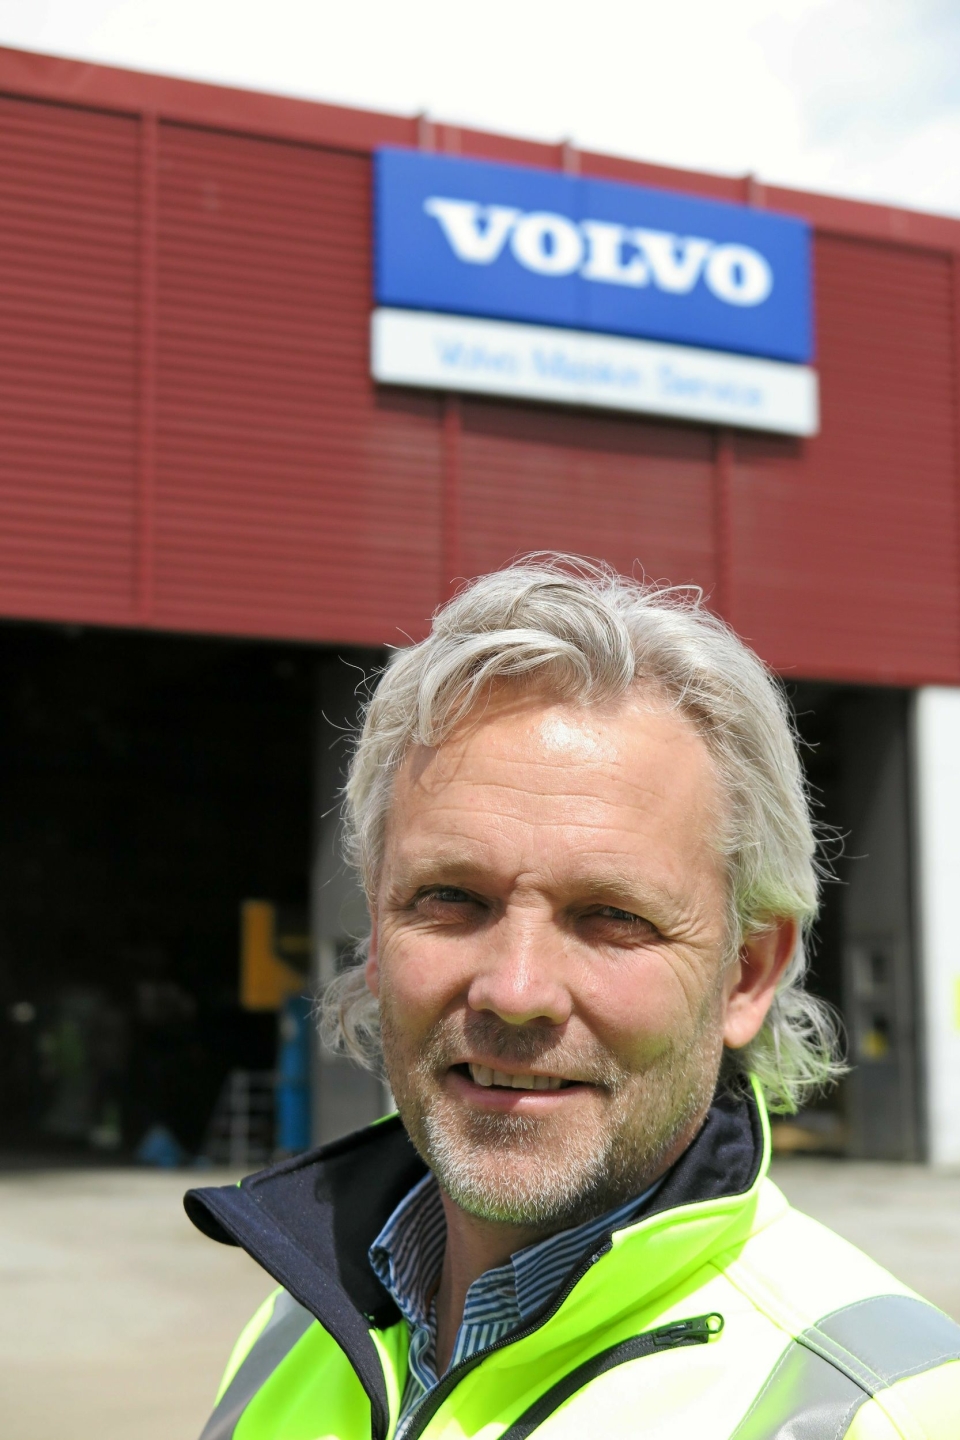 OFFENSIV: - Utsiktene er avgjort lovende, sier Volvo-sjefen.